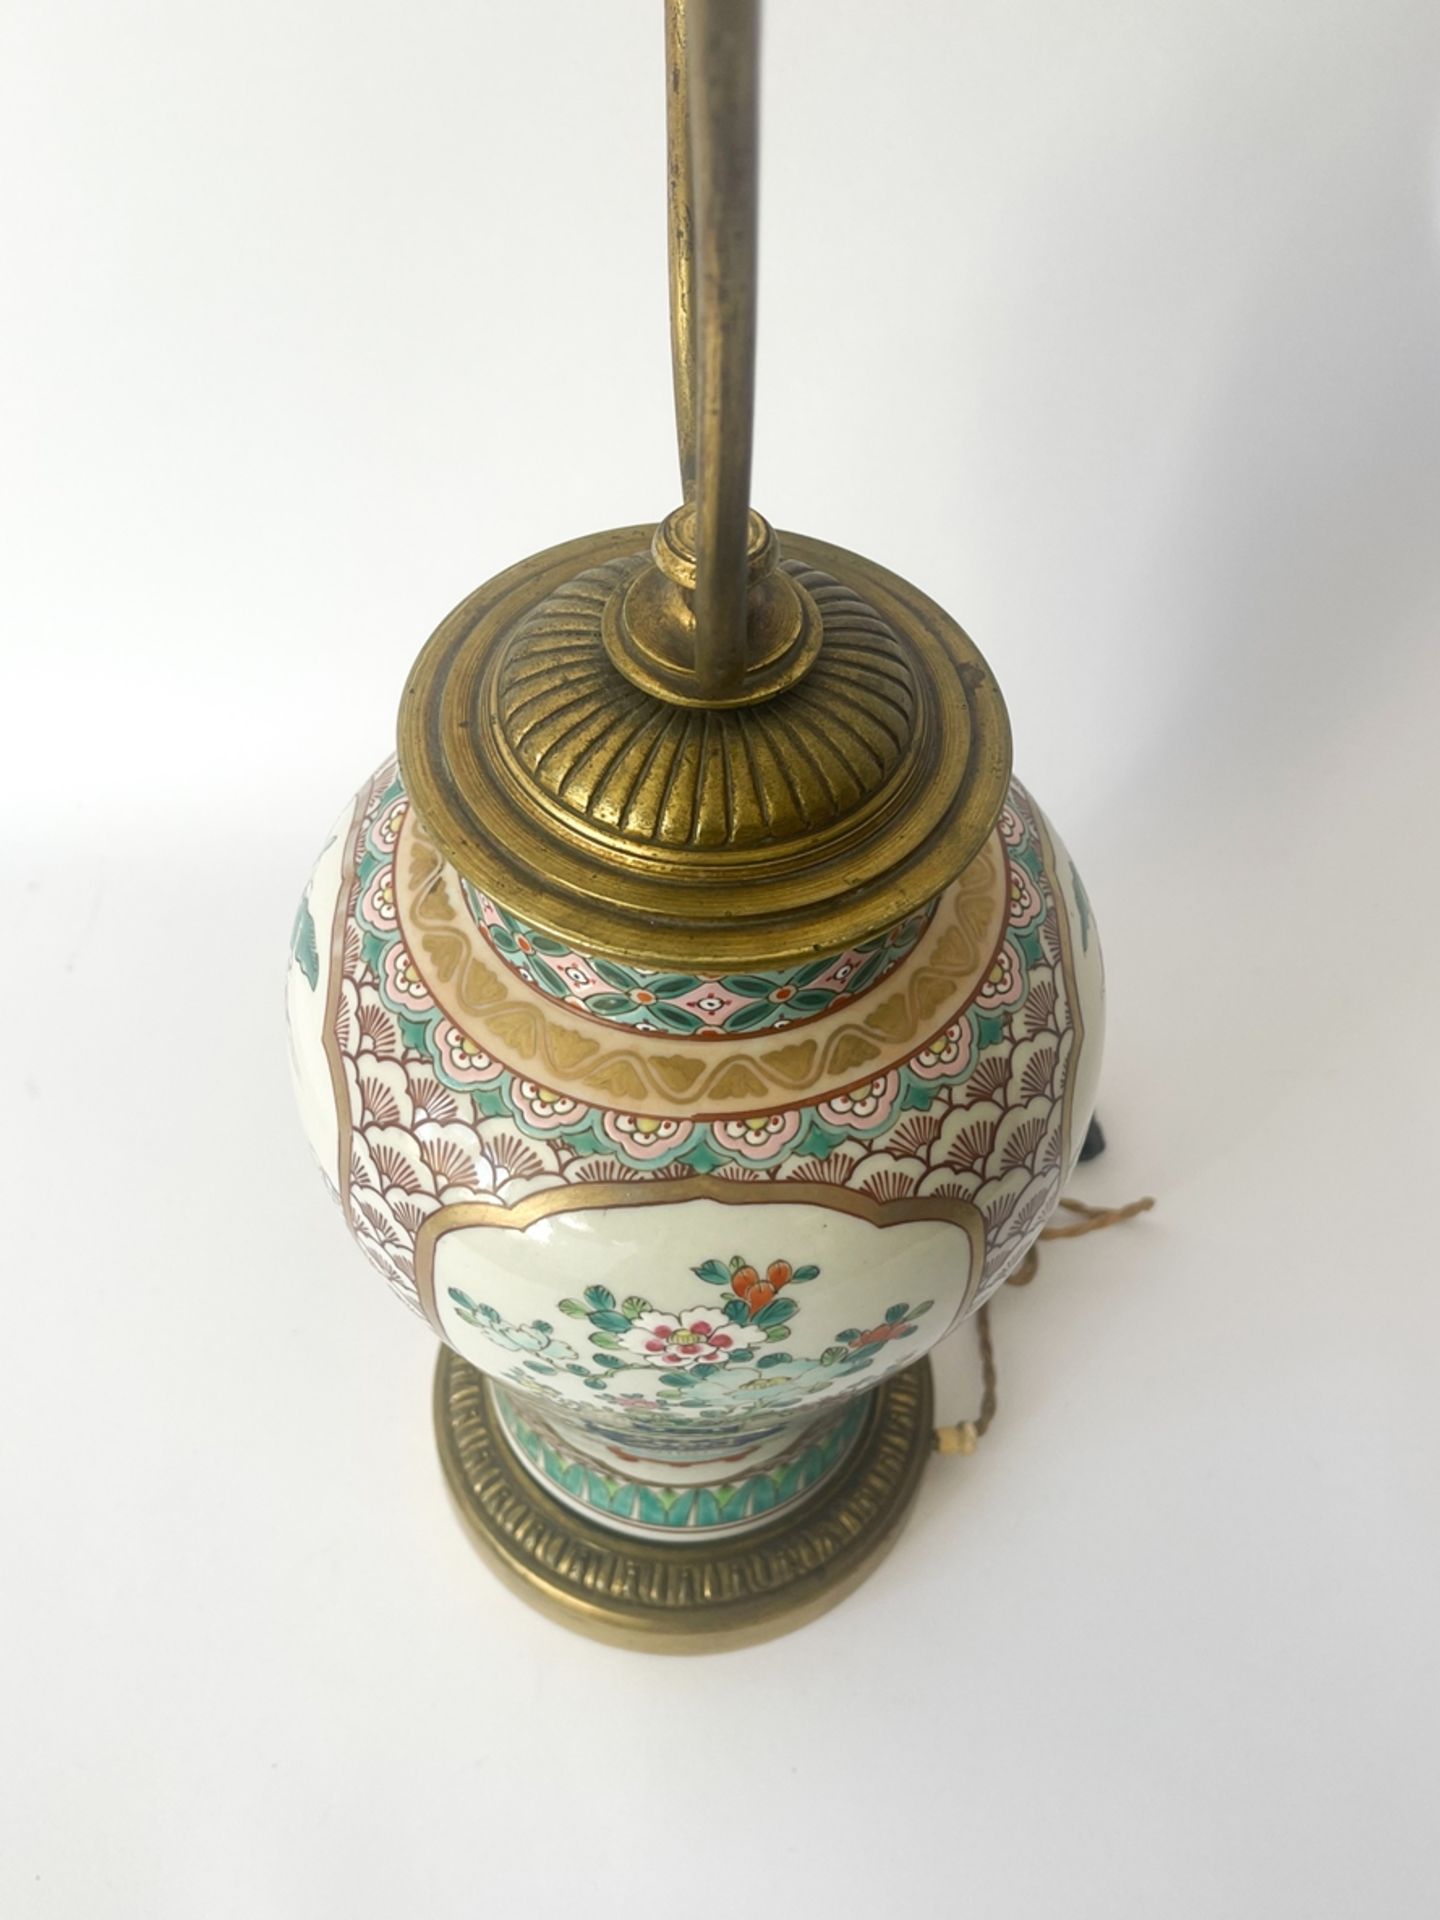 Porzellanvase/Lampe mit Bronzemontierung "China" - Image 5 of 15